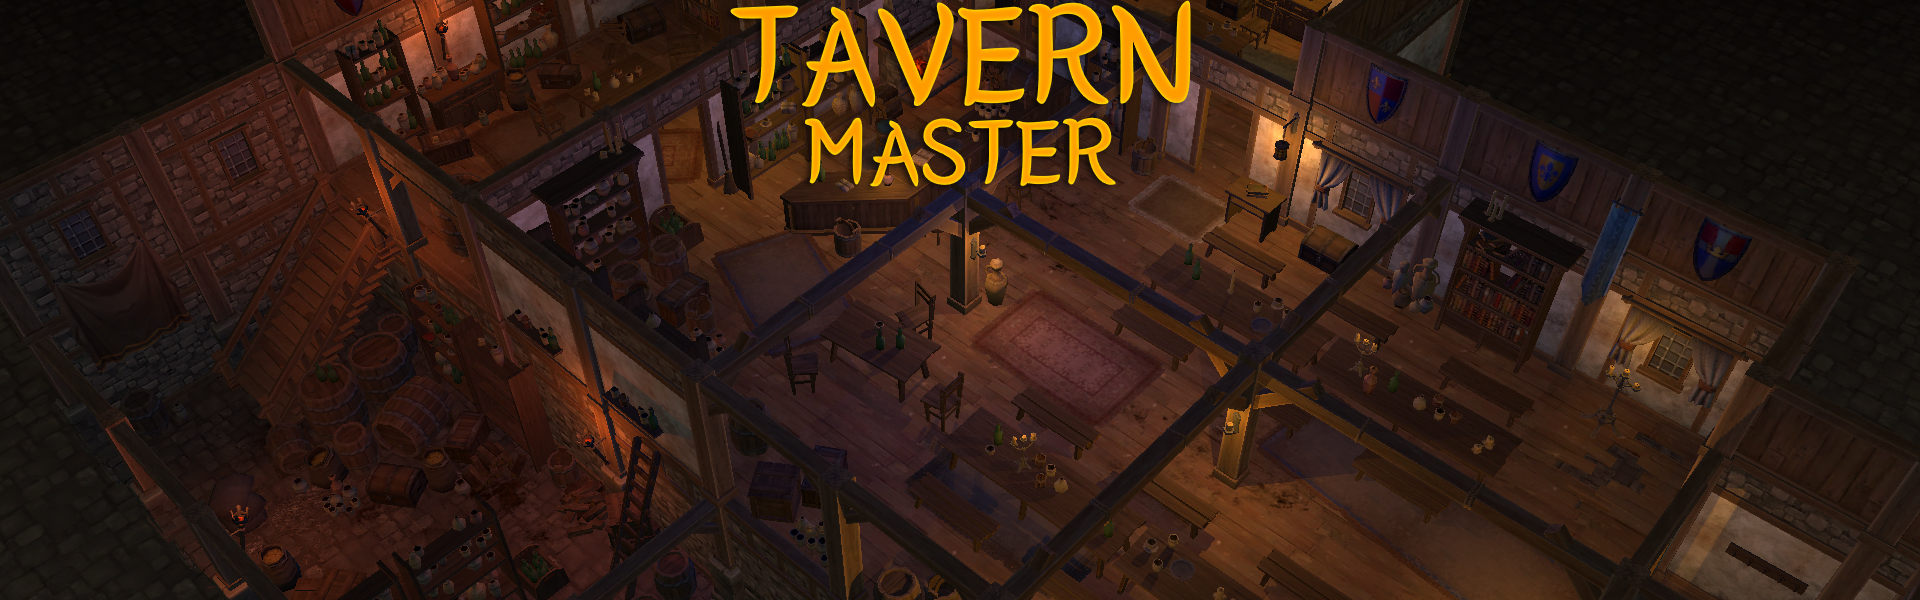 tavern master synonym